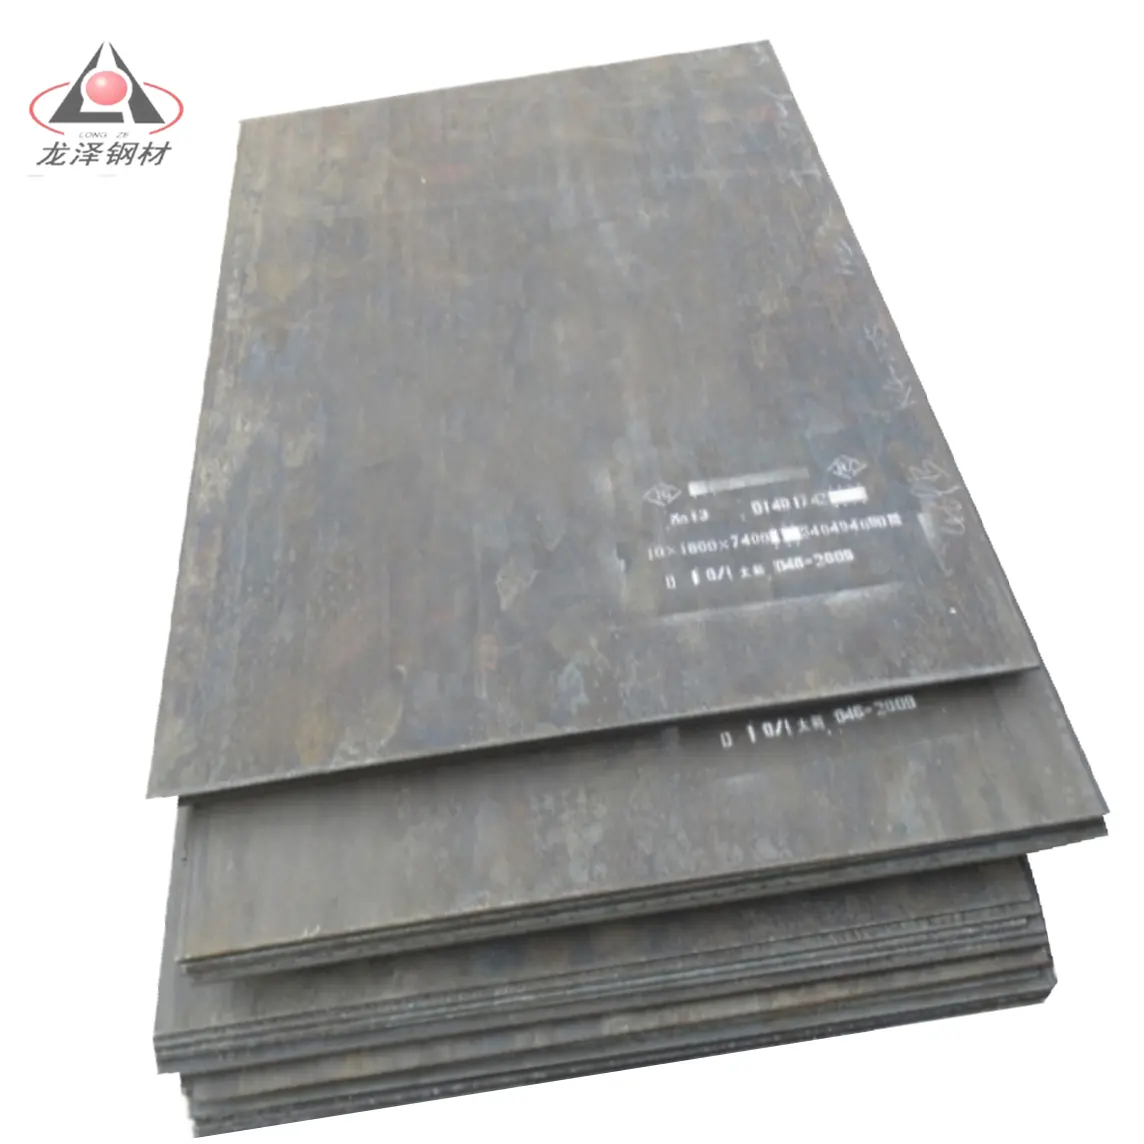 Schlussverkauf Stahlplatte Produkt X120Mn12/Mn13/AISIA128 hochmanganstahlplatte